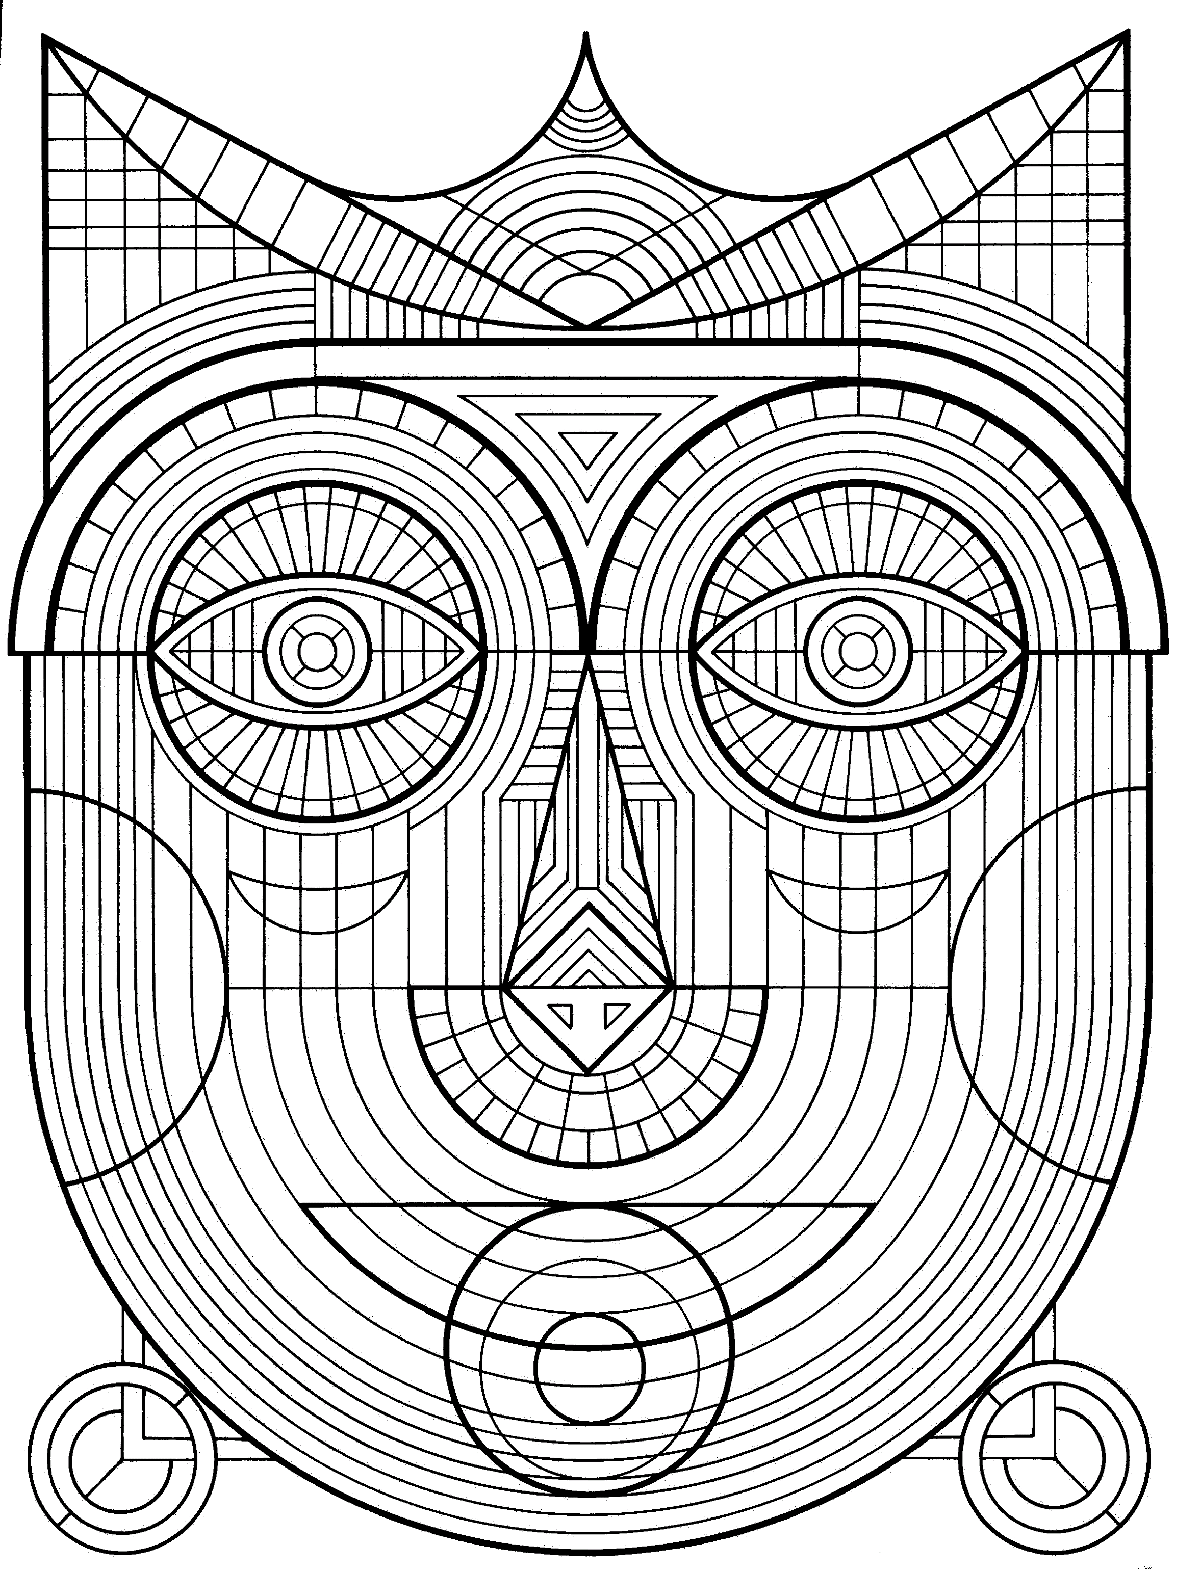 Dessin de masque traditionnel avec nombreux détails, à imprimer et colorier